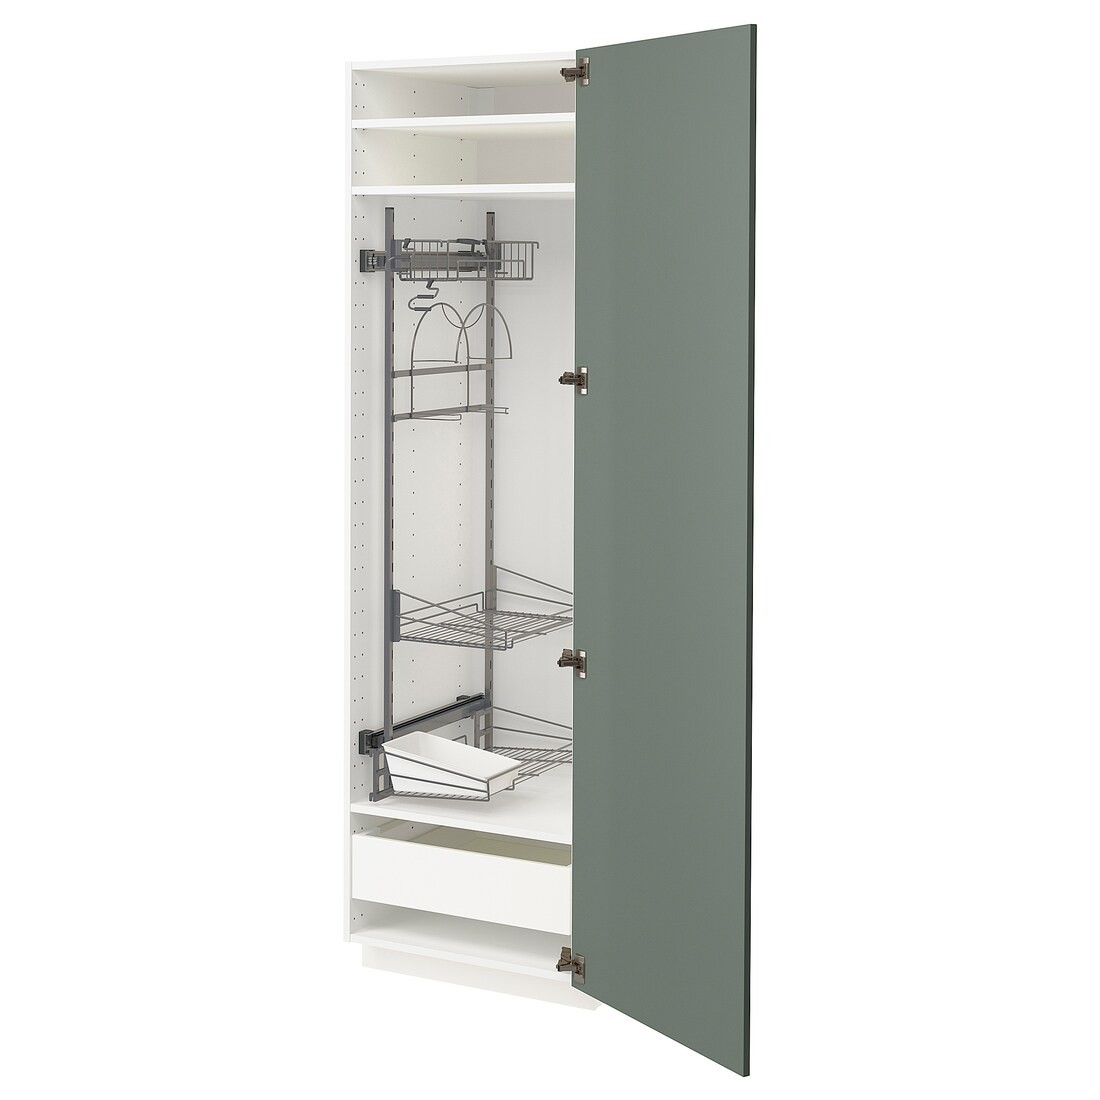 METOD МЕТОД / MAXIMERA МАКСИМЕРА Высокий шкаф с отделением для аксессуаров для уборки, белый / Bodarp серо-зеленый, 60x60x200 см